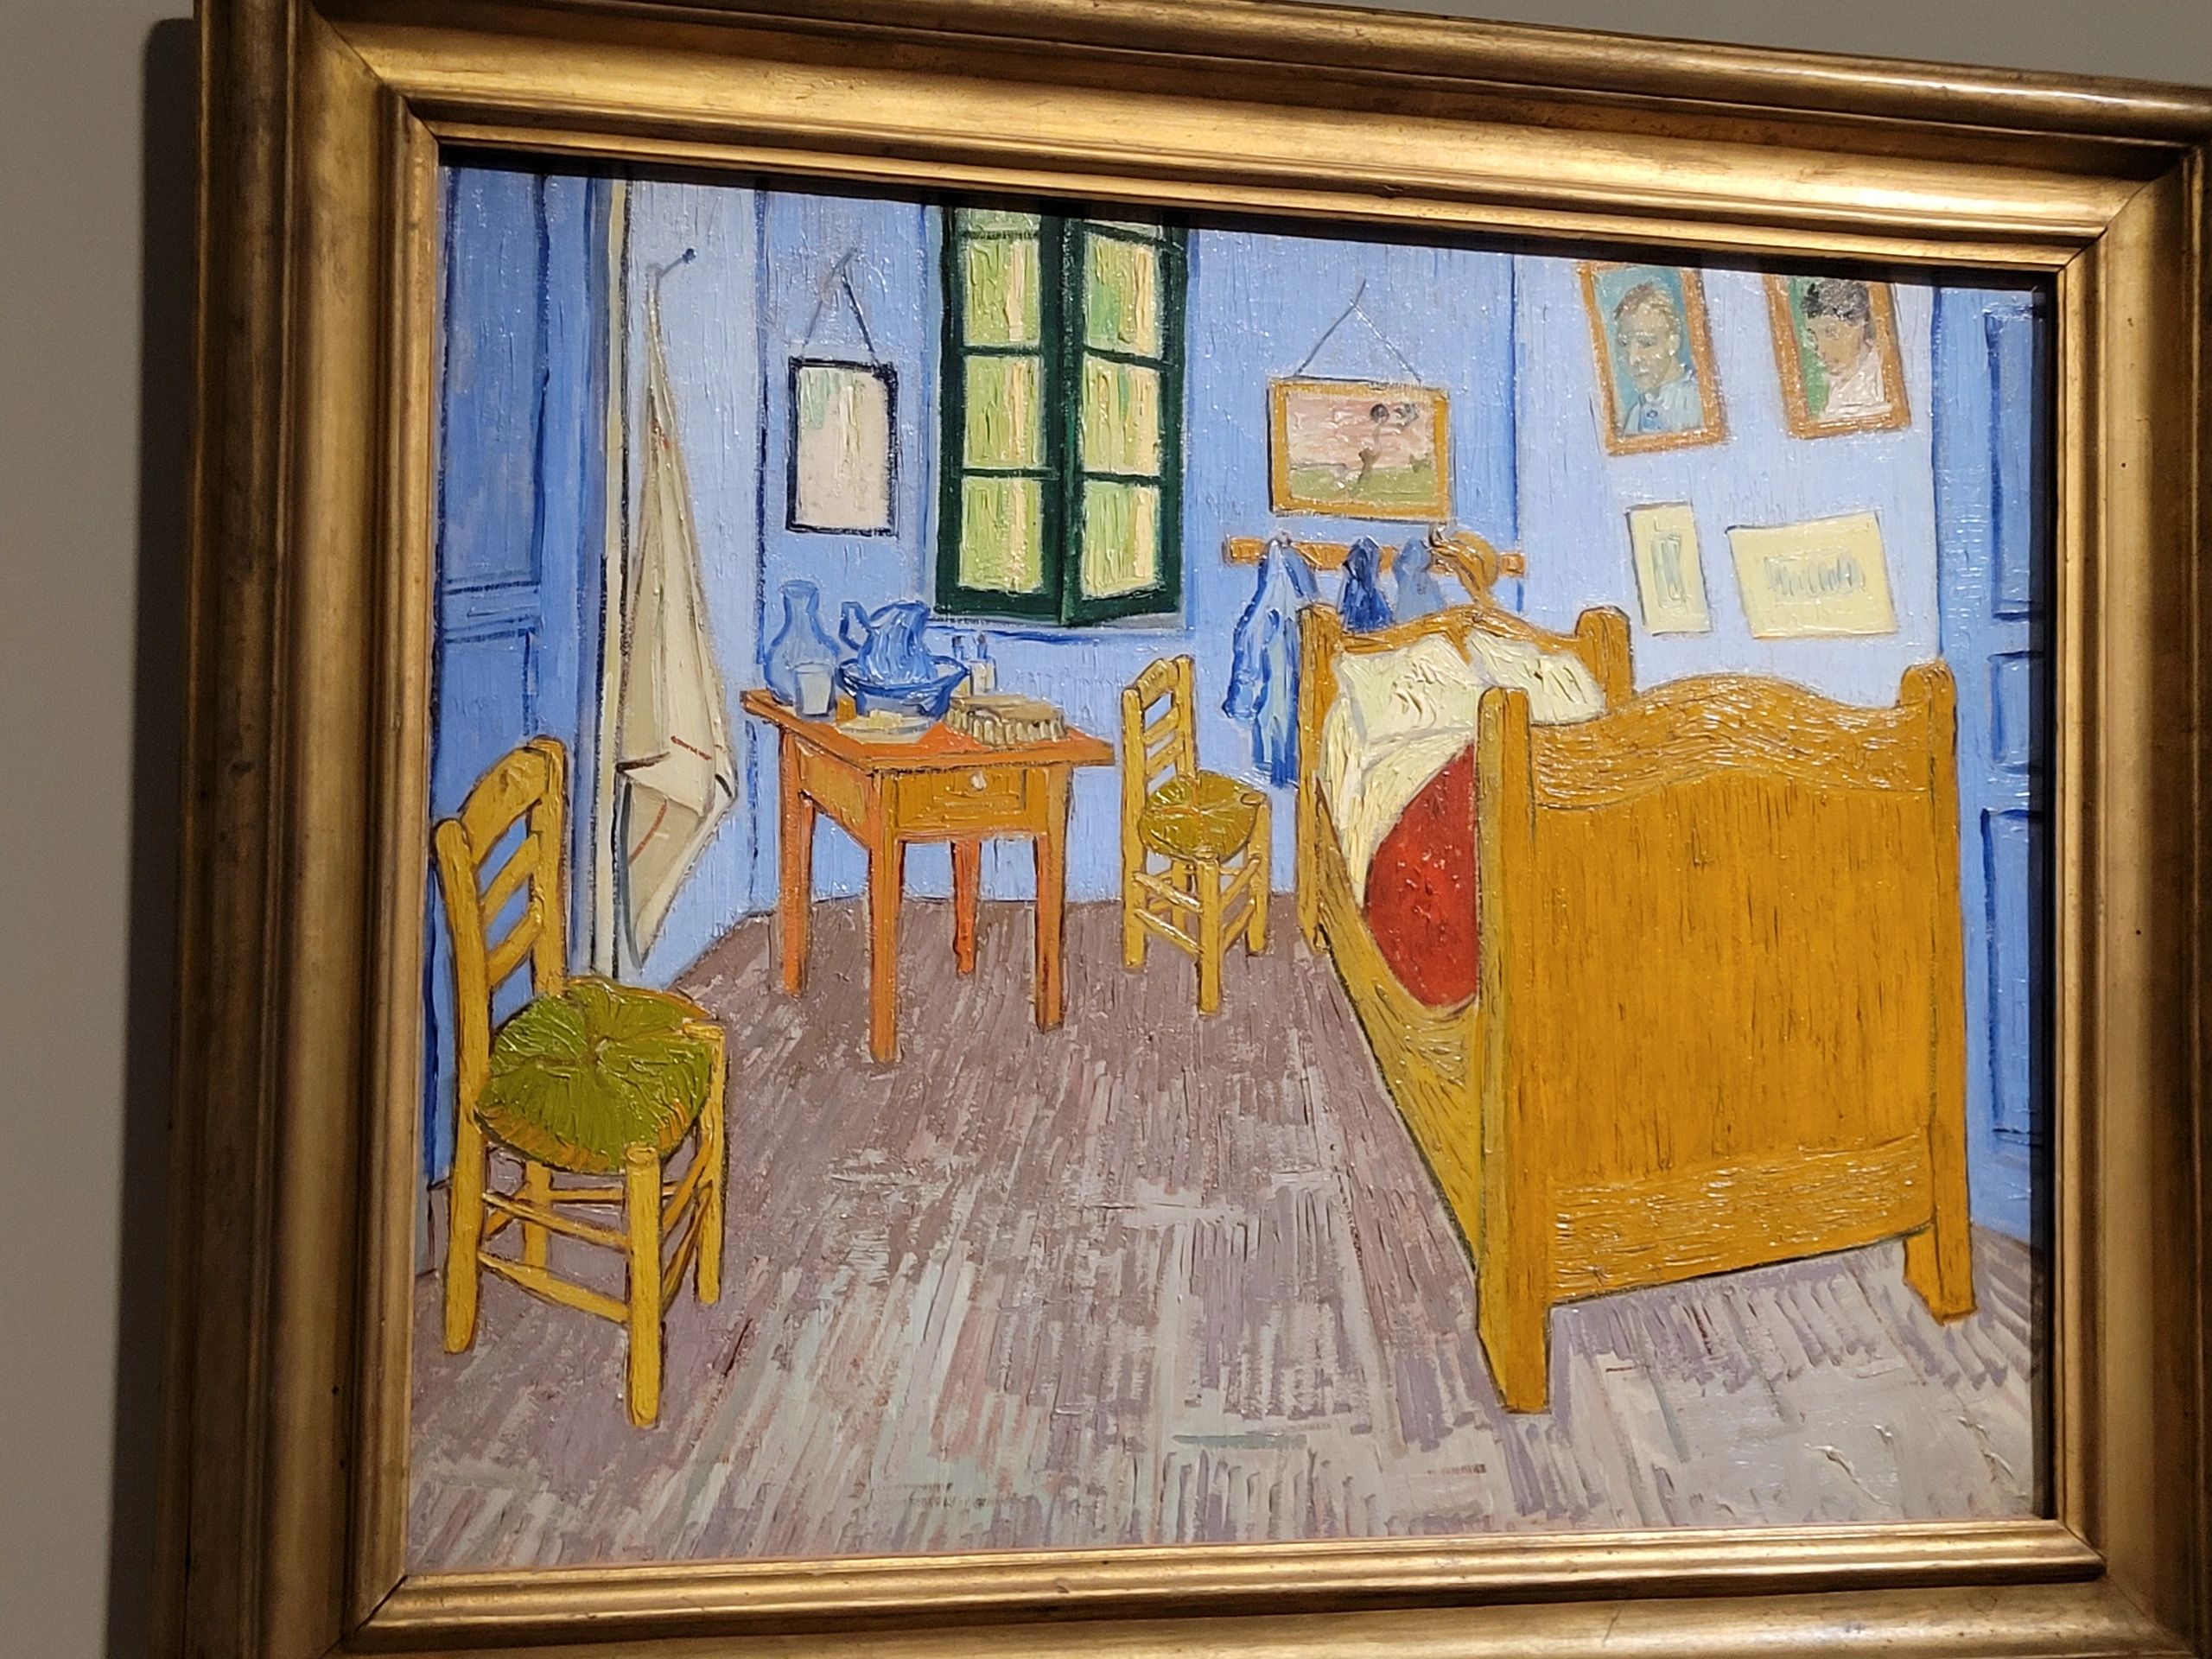 Van Gogh Art and paintings in Paris Museums